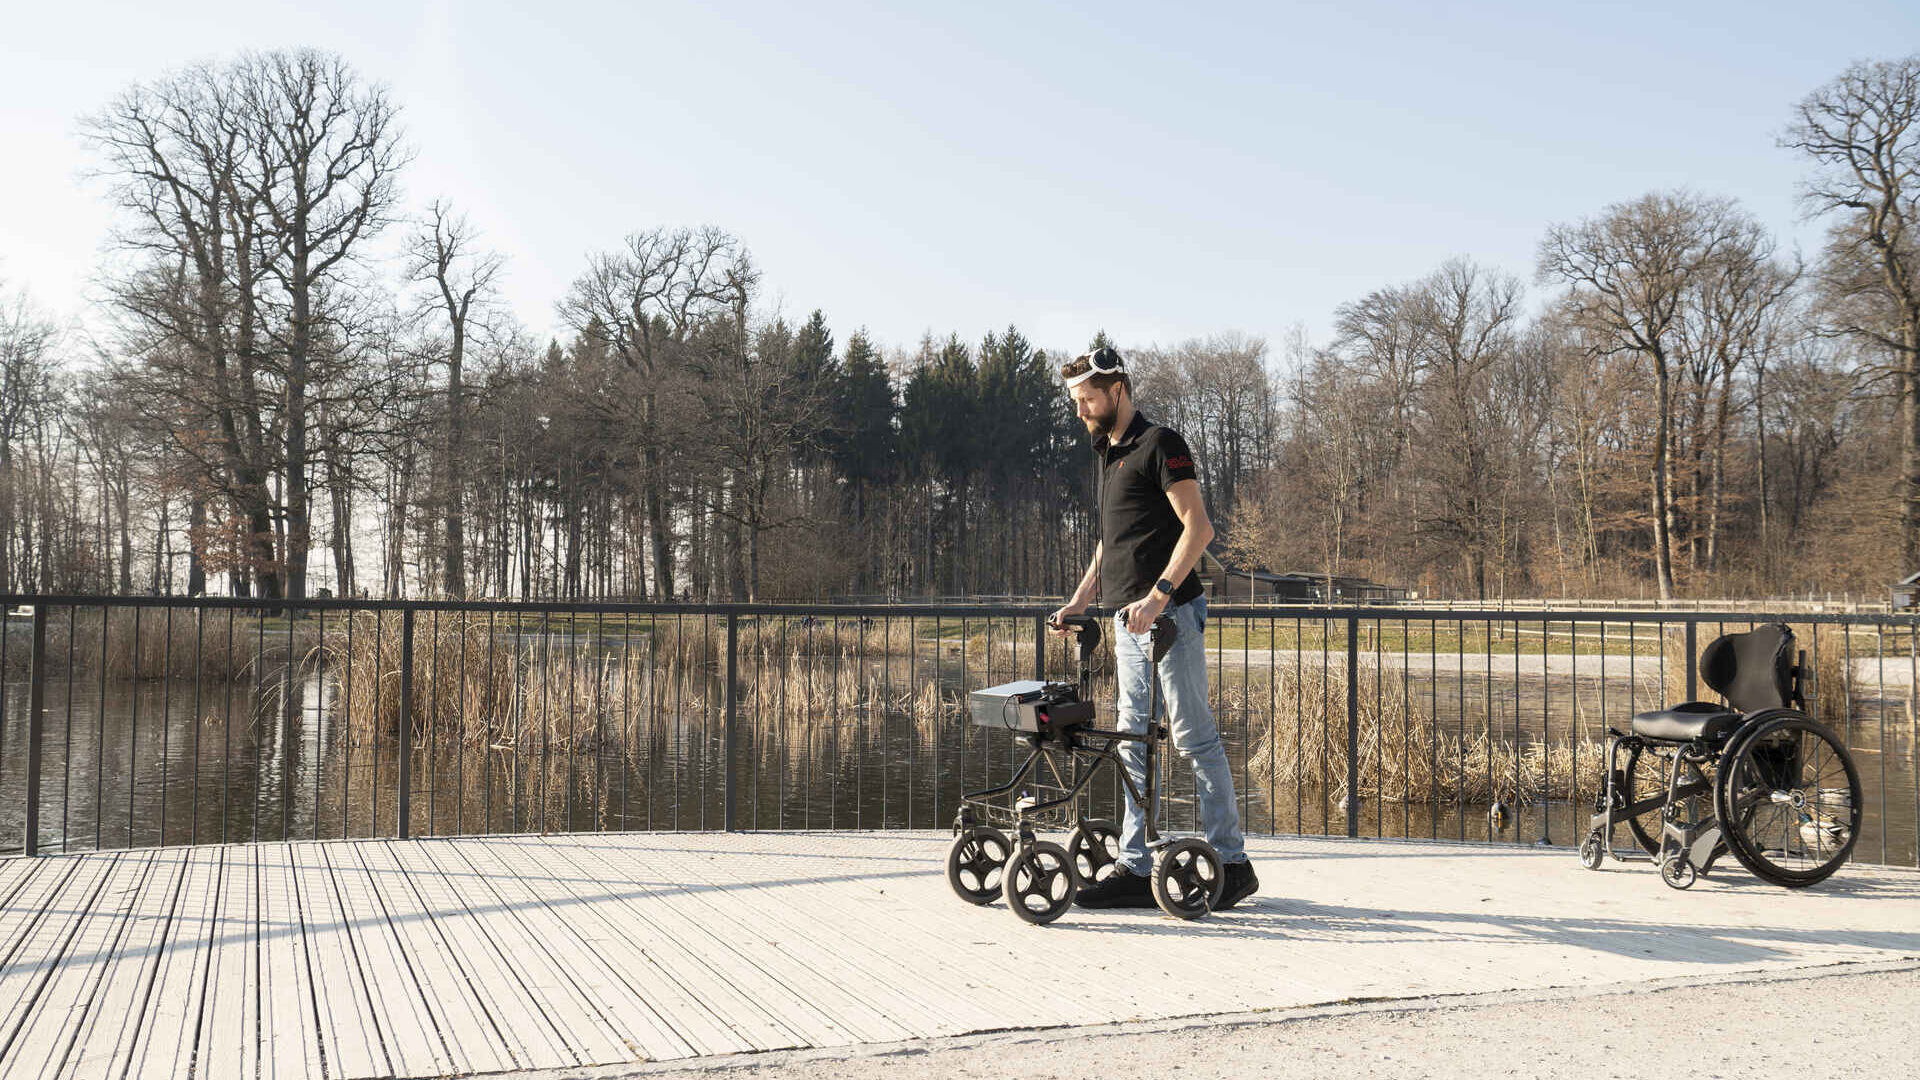 Caminar gracias al pensamiento: Gert-Jan Oskam, que quedó paralizado en las extremidades inferiores tras un accidente de bicicleta y que ha vuelto a caminar gracias a un puente digital entre el cerebro y la médula espinal, en el Centre Hospitalier Universitaire Vaudois